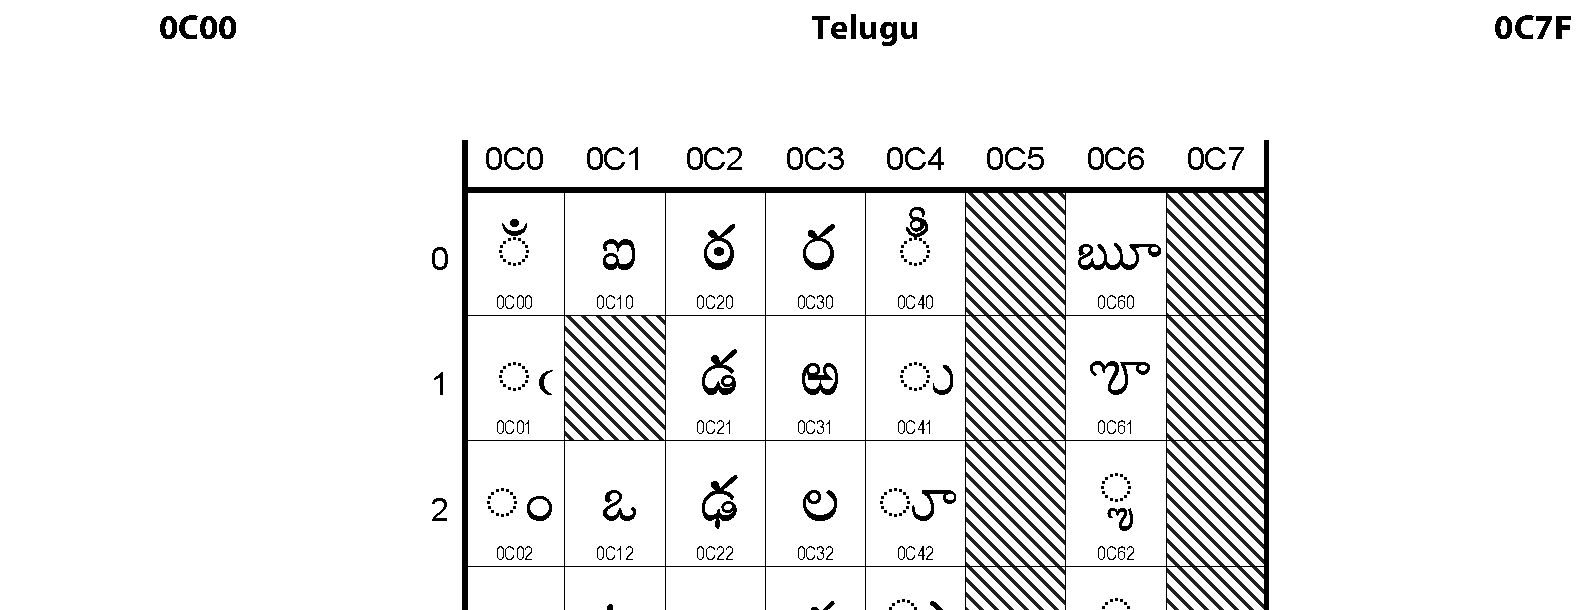 Unicode - Telugu